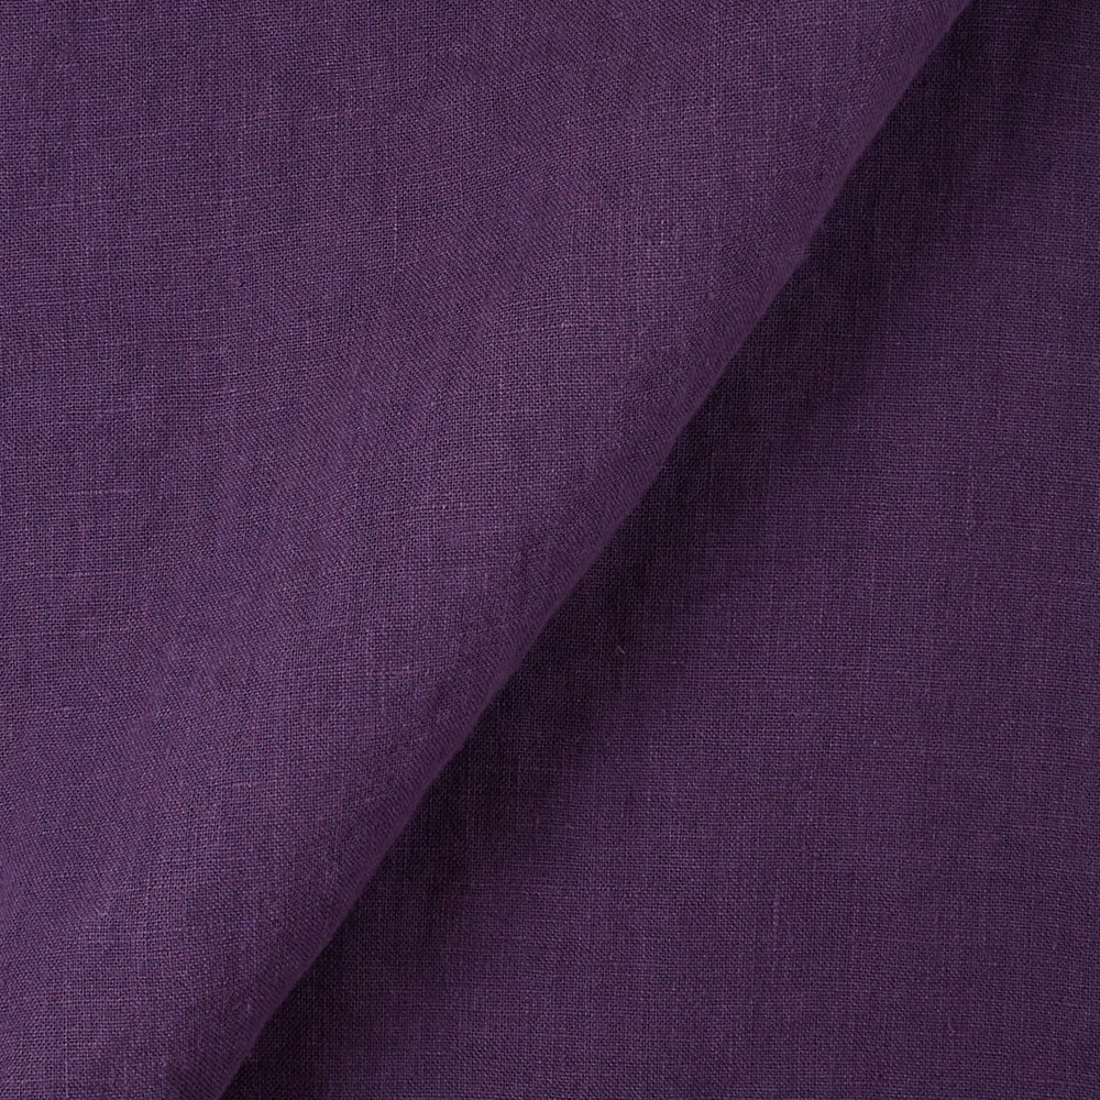 Fabric IL019 100% Linen fabric ROYAL PURPLE FS Signature Finish